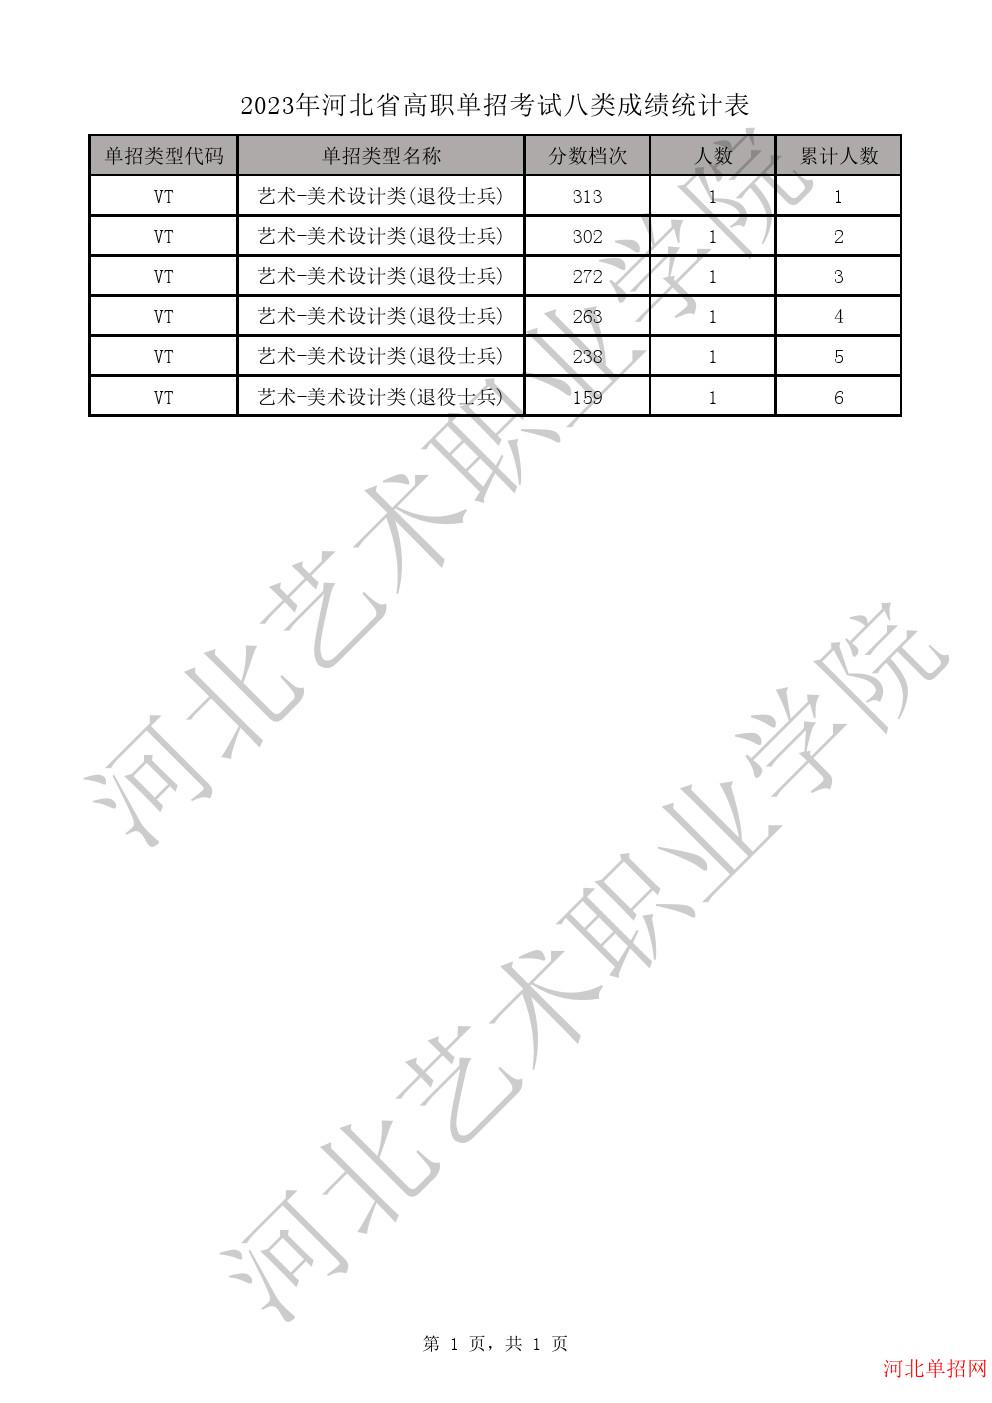 2023年河北省高职单招考试八类成绩统计表-VT艺术-美术设计类(退役士兵)一分一档表 图1